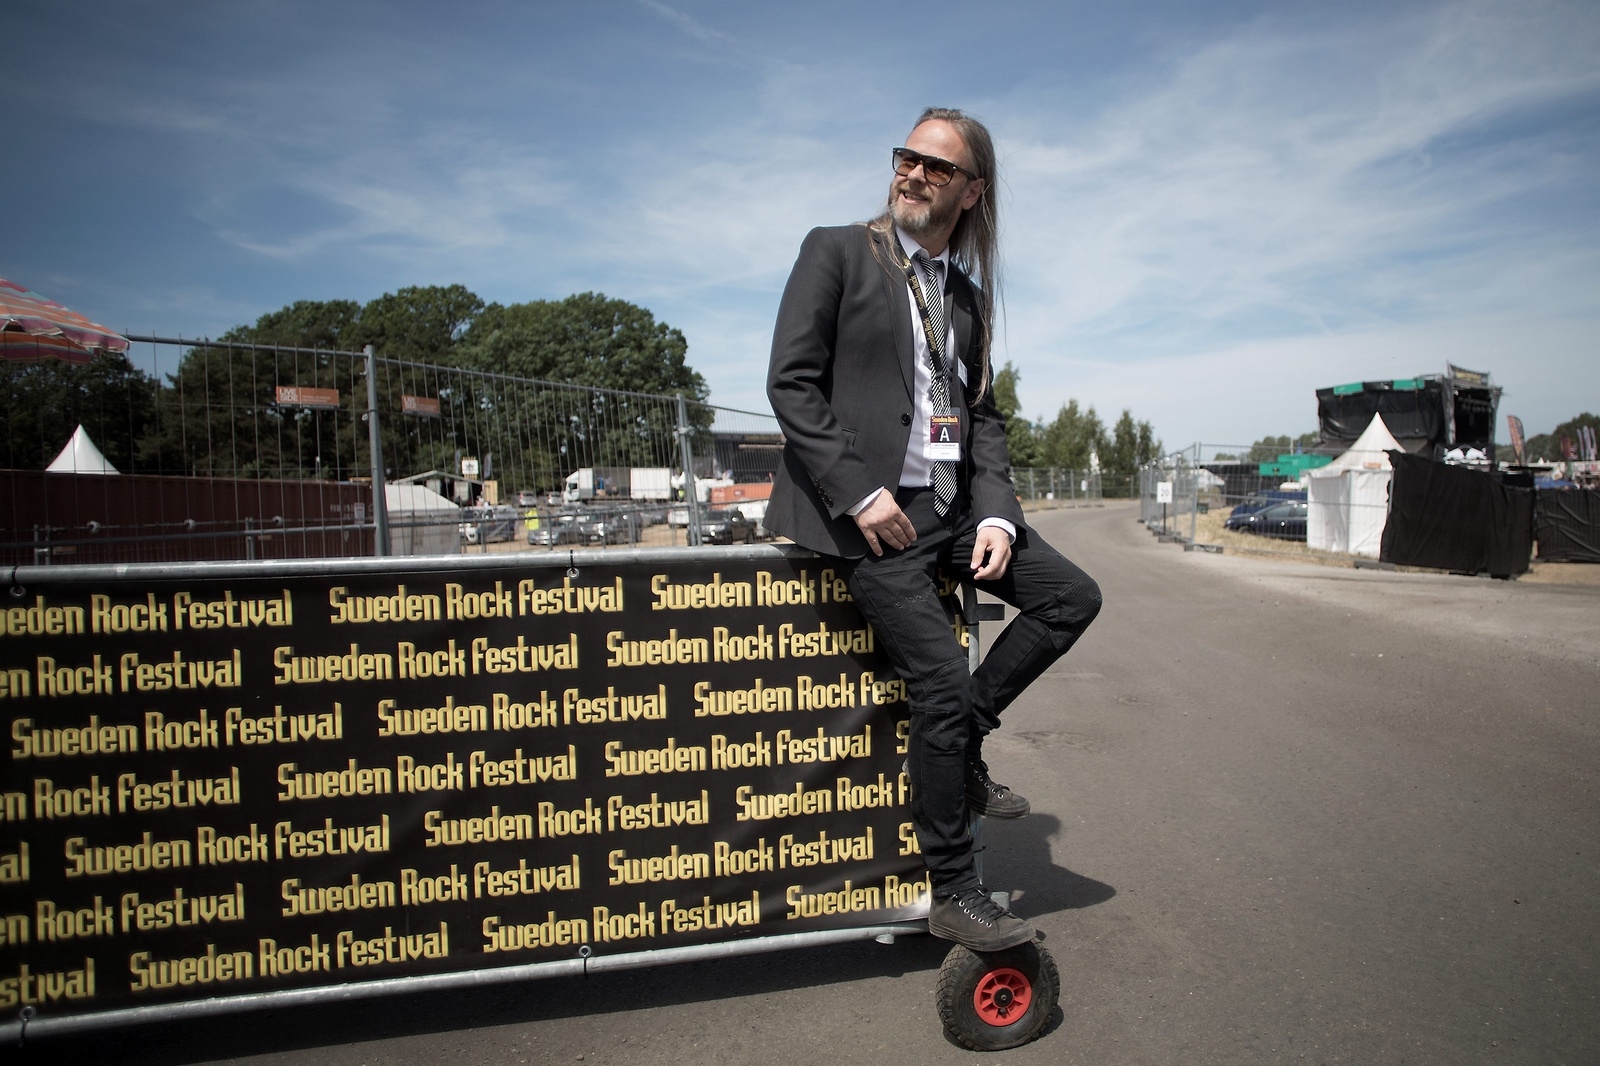 Antti Vuorenniemi är artist driver och hämtar och lämnar band och deras crew på flygplatser och hotell. – Det här är en oas i livet, säger han om Sweden Rock.